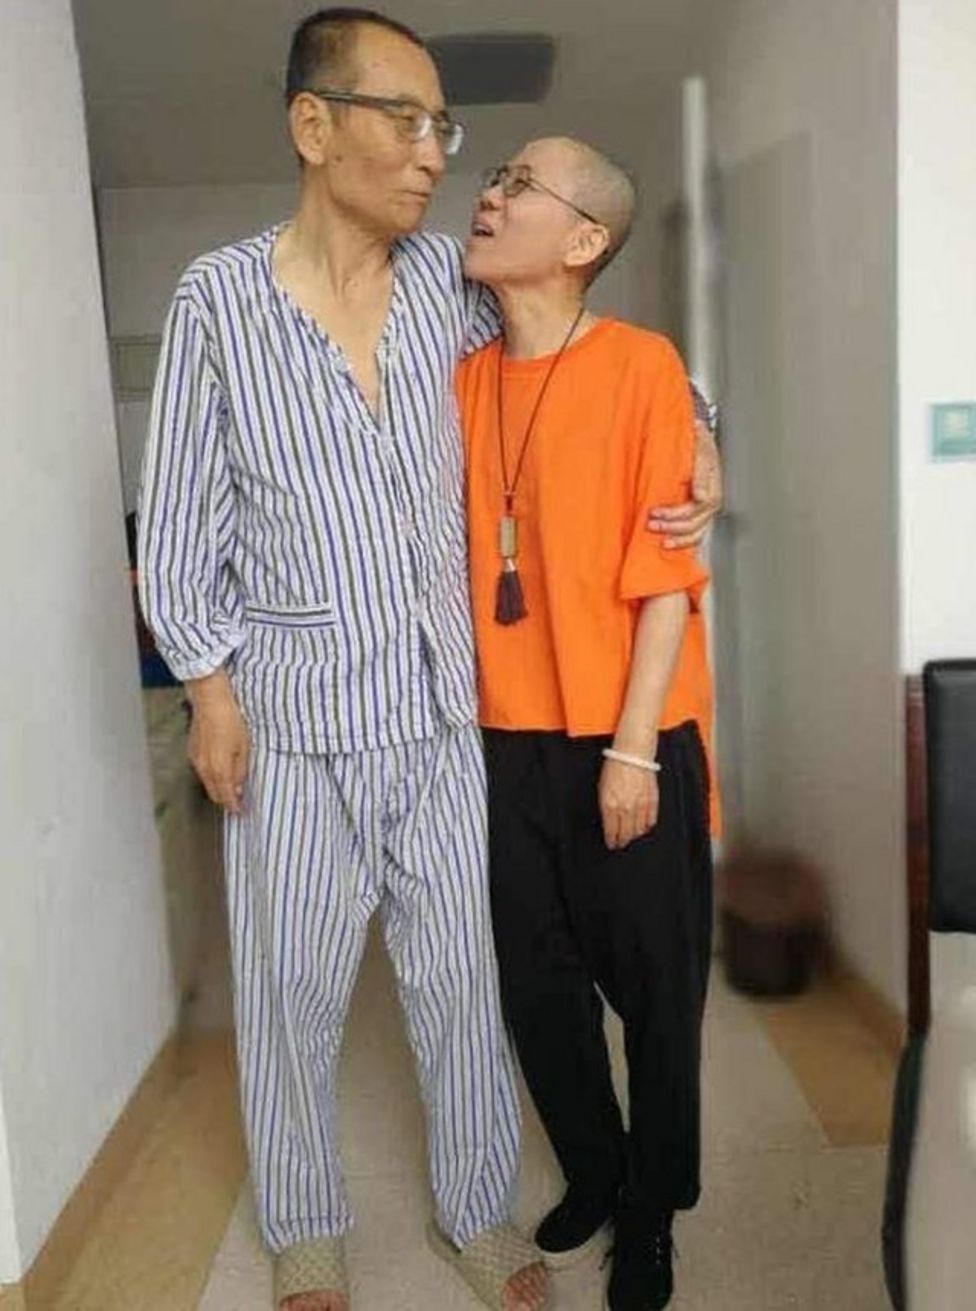 Liu Xiaobo and Liu Xia, he in pyjamas and she in outdoor clothes